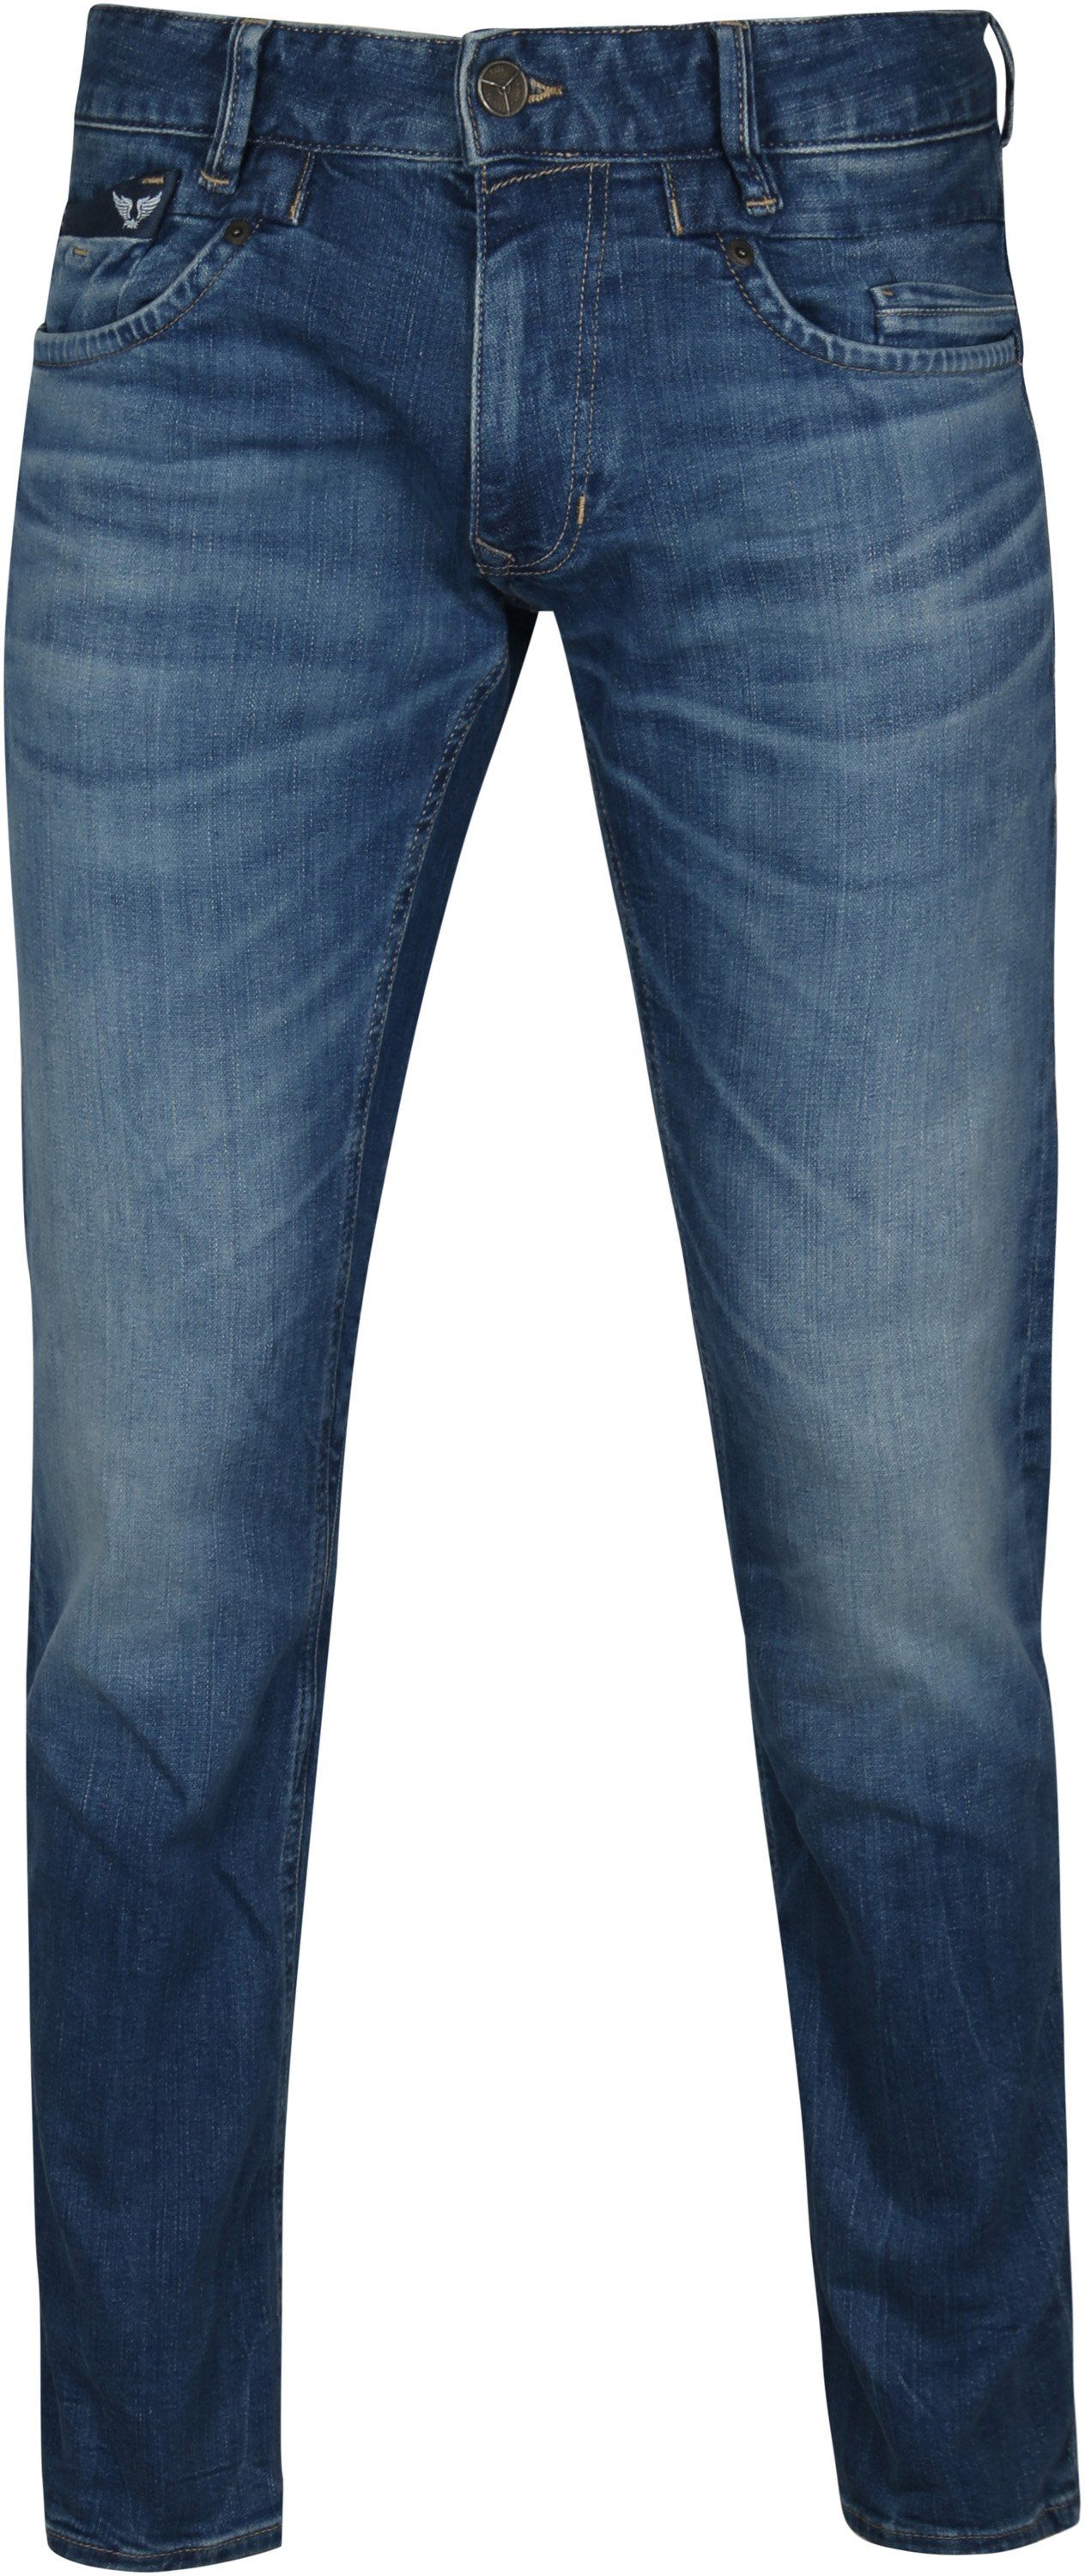 PME Legend Commander 3.0 Jeans Blue size W 35